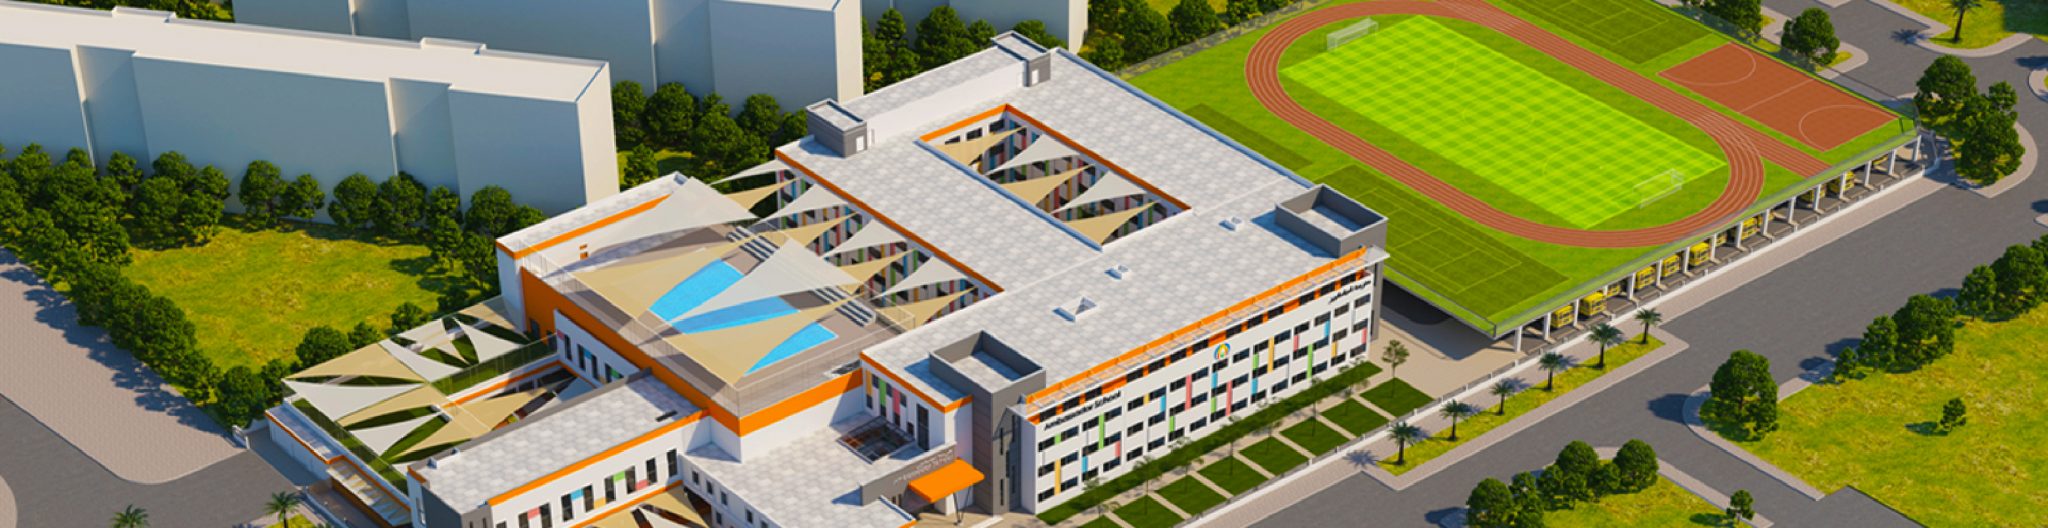 عرض افتتاح الحرم الجامعي الجديد لمدرسة أمباسادور دبي في سبتمبر 2018 في بوابة الخيل